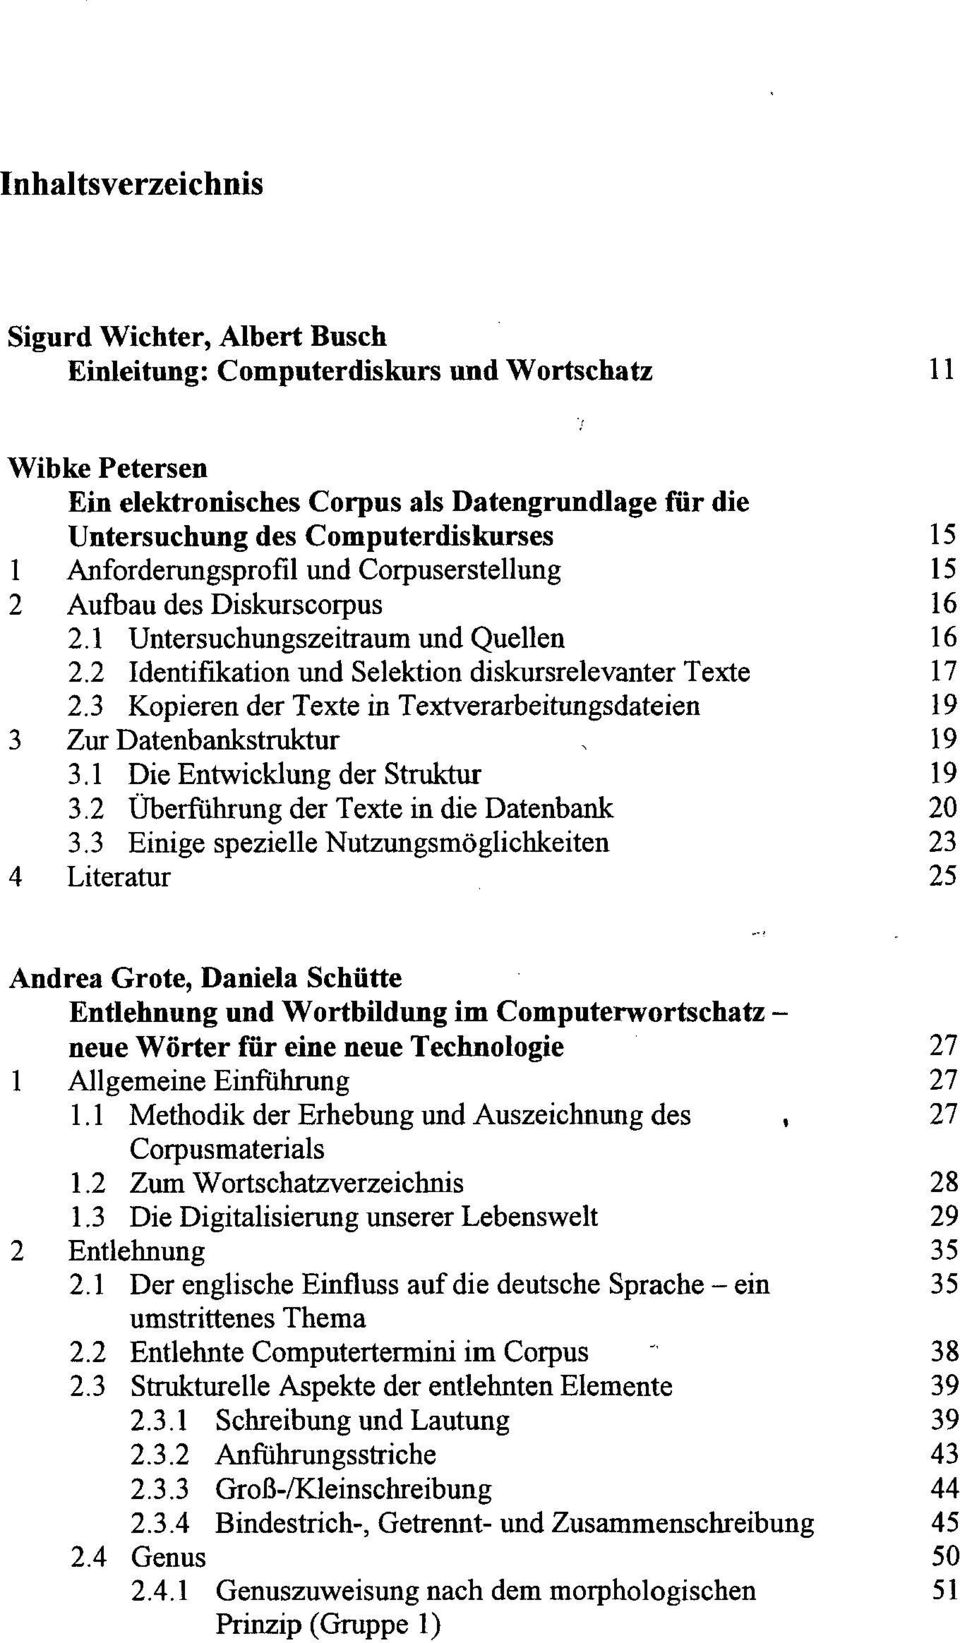 3 Kopieren der Texte in Textverarbeitungsdateien 19 3 Zur Datenbankstruktur, 19 3.1 Die Entwicklung der Struktur 19 3.2 Überfuhrung der Texte in die Datenbank 20 3.